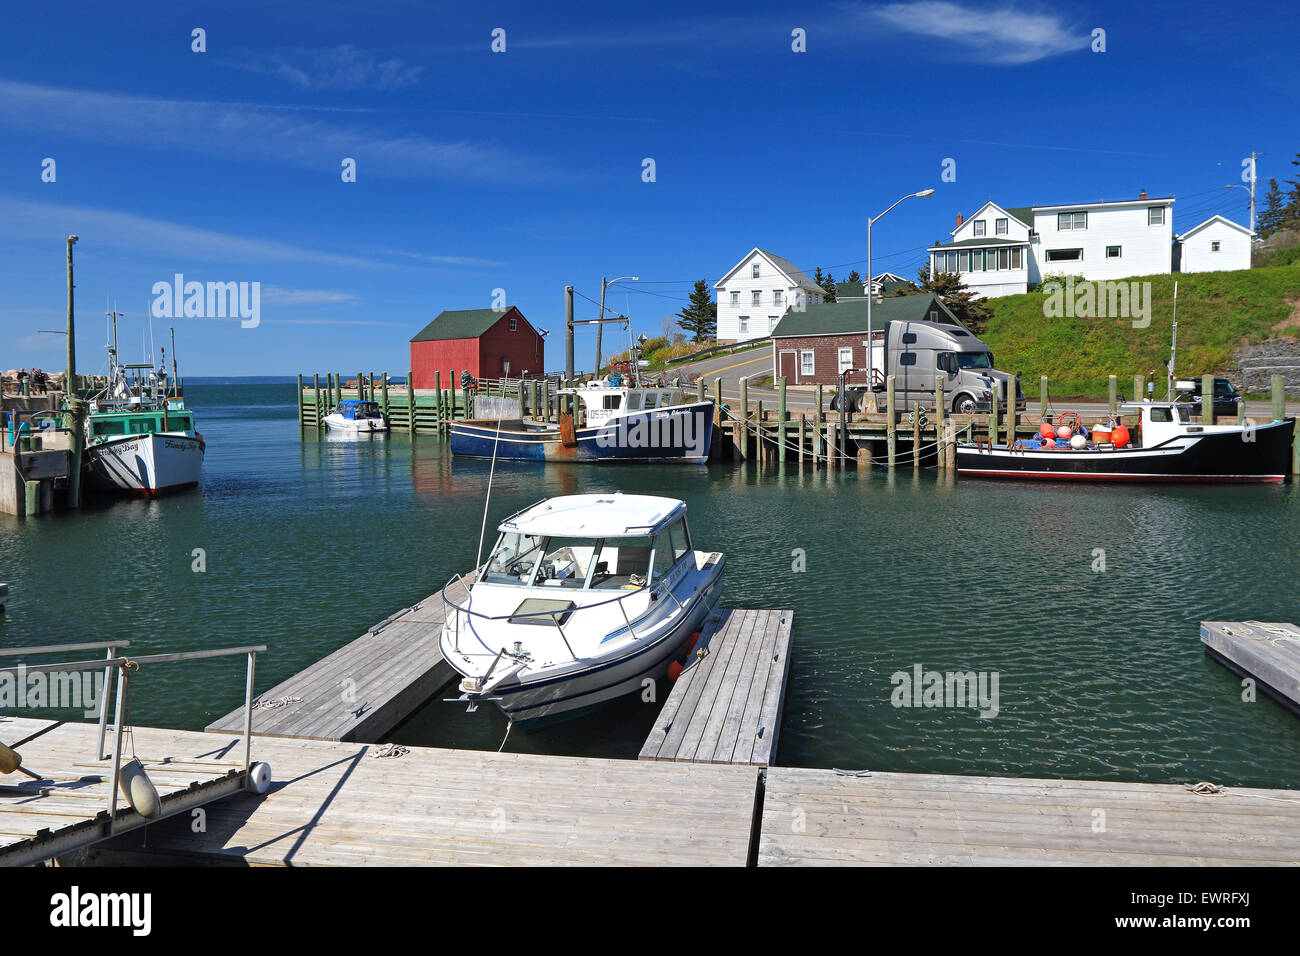 Hall il porto del villaggio di pescatori ad alta marea con barche da pesca. Halls Porto Baia di Fundy, Nova Scotia, Canada. Foto Stock